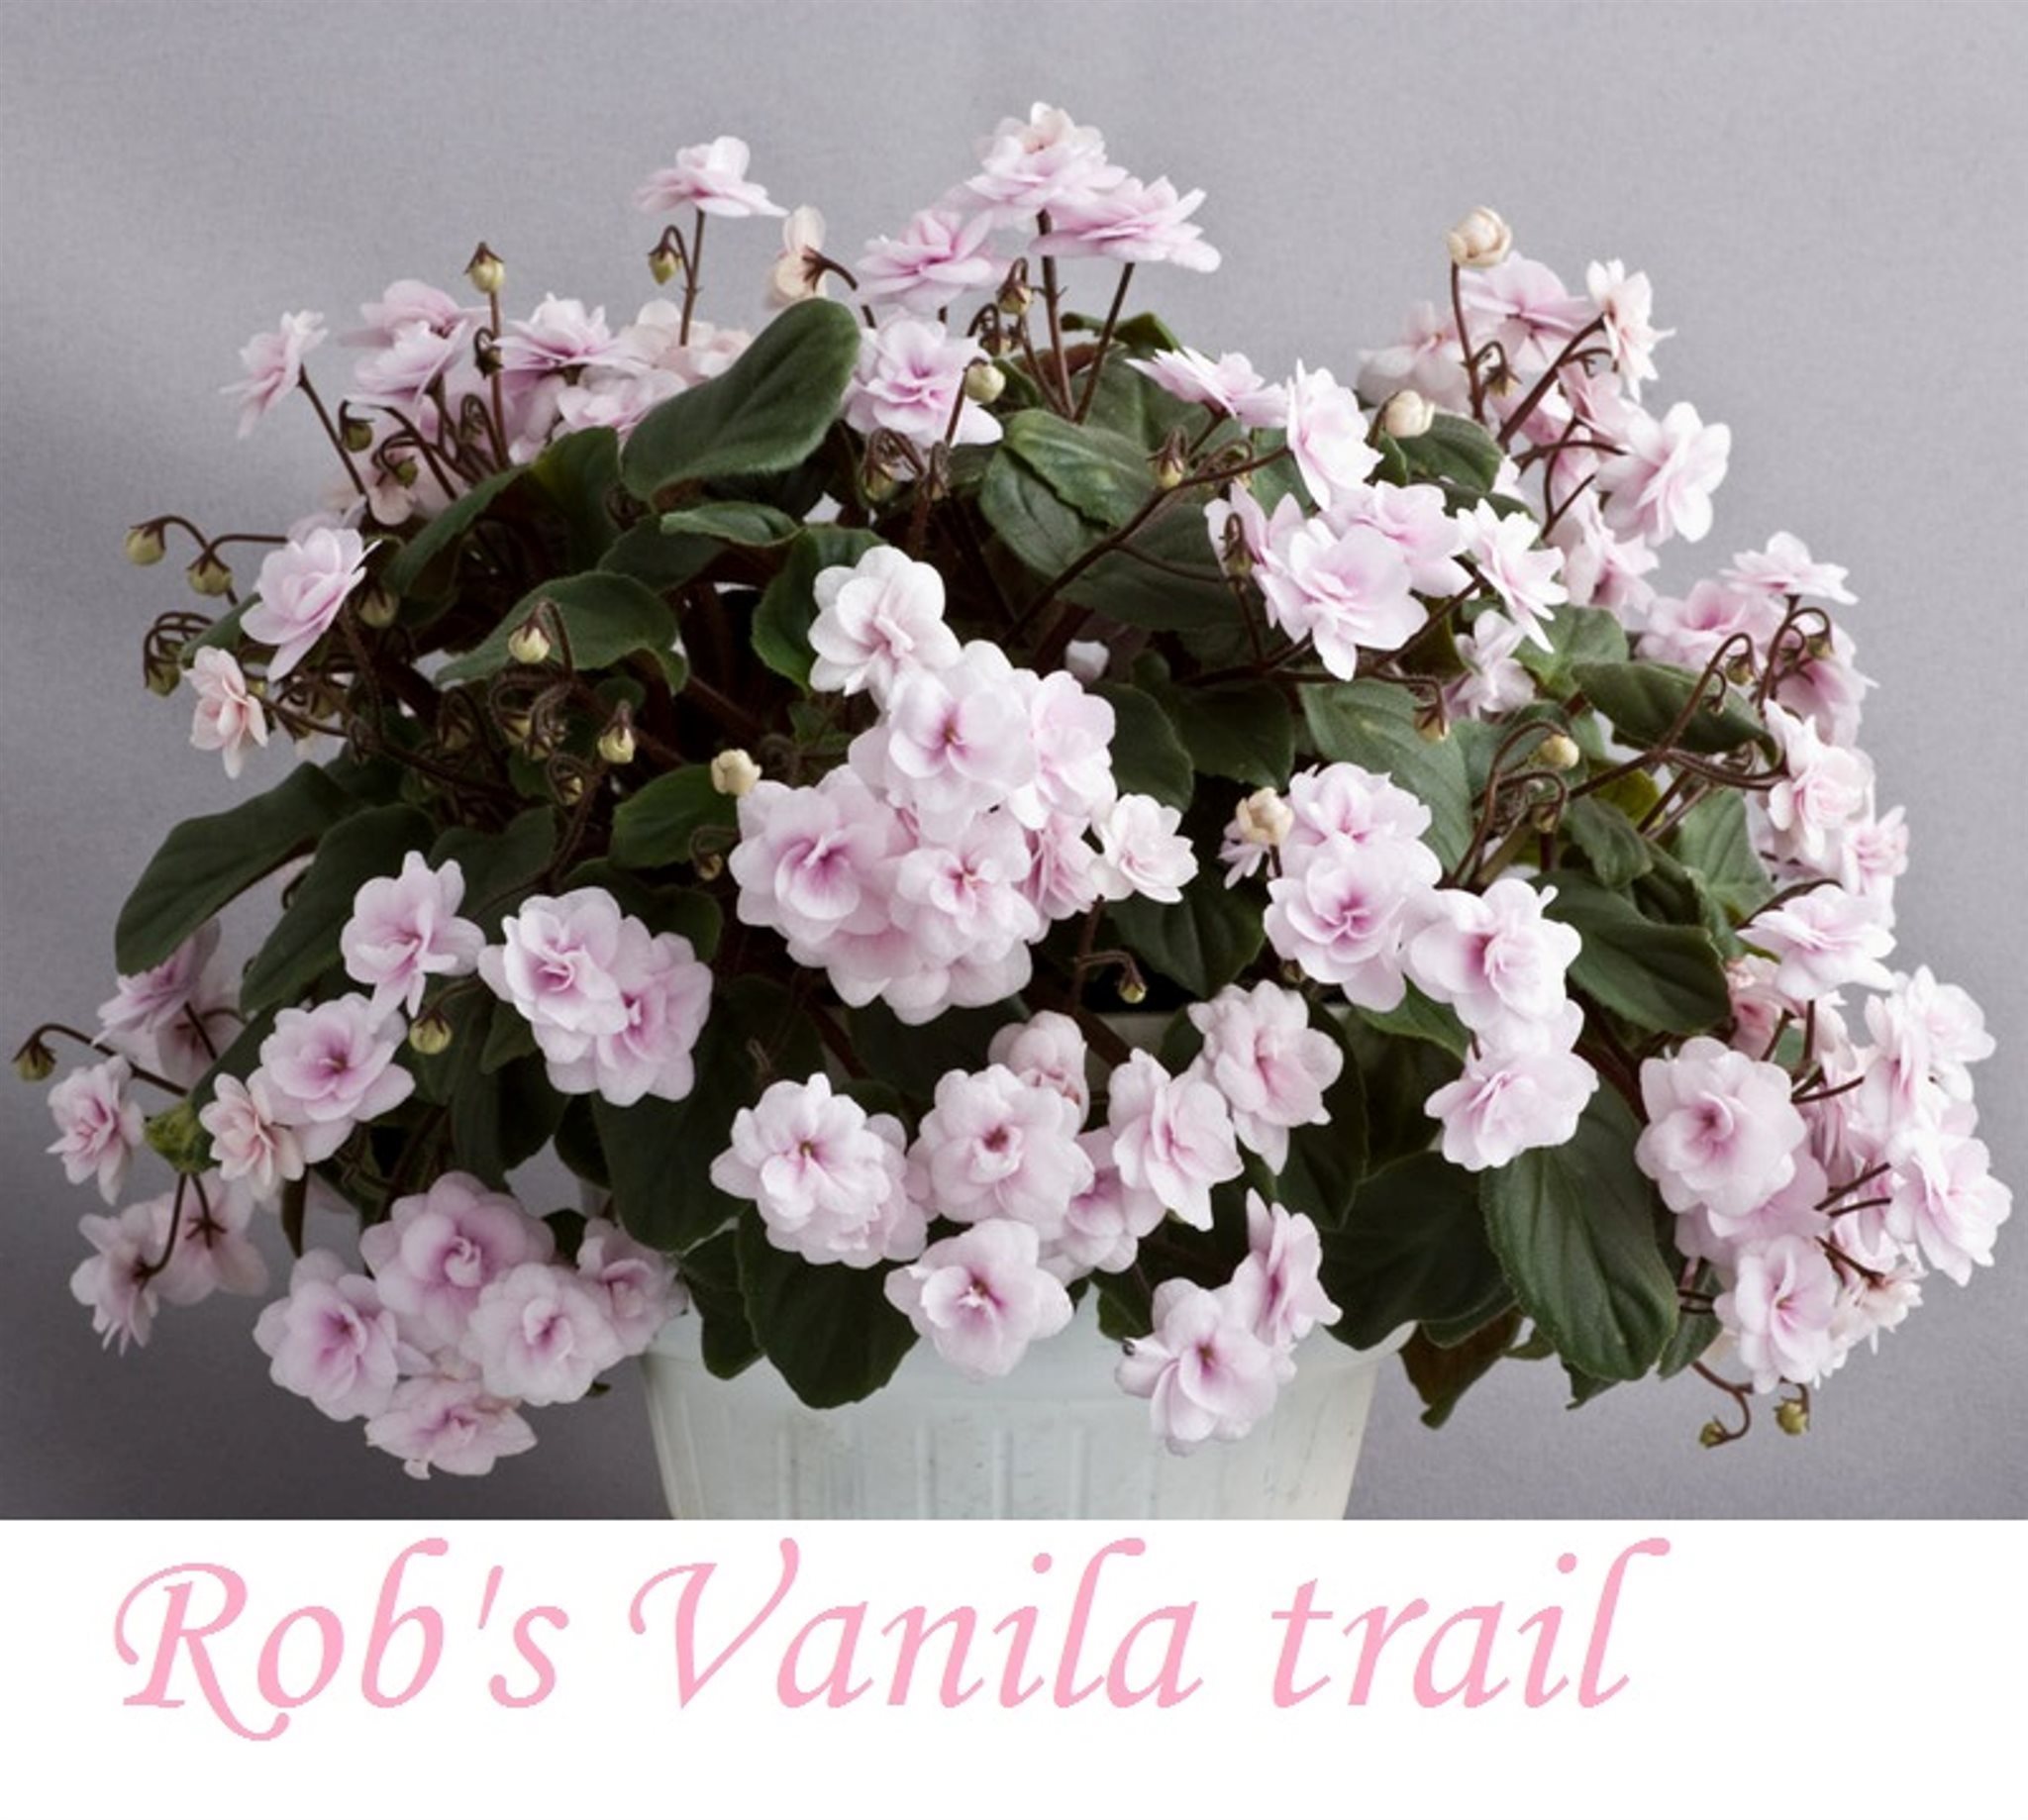 Saintpaulia Rob's Vanilla Trail planta bild 2 på Tradera.com - Blommande